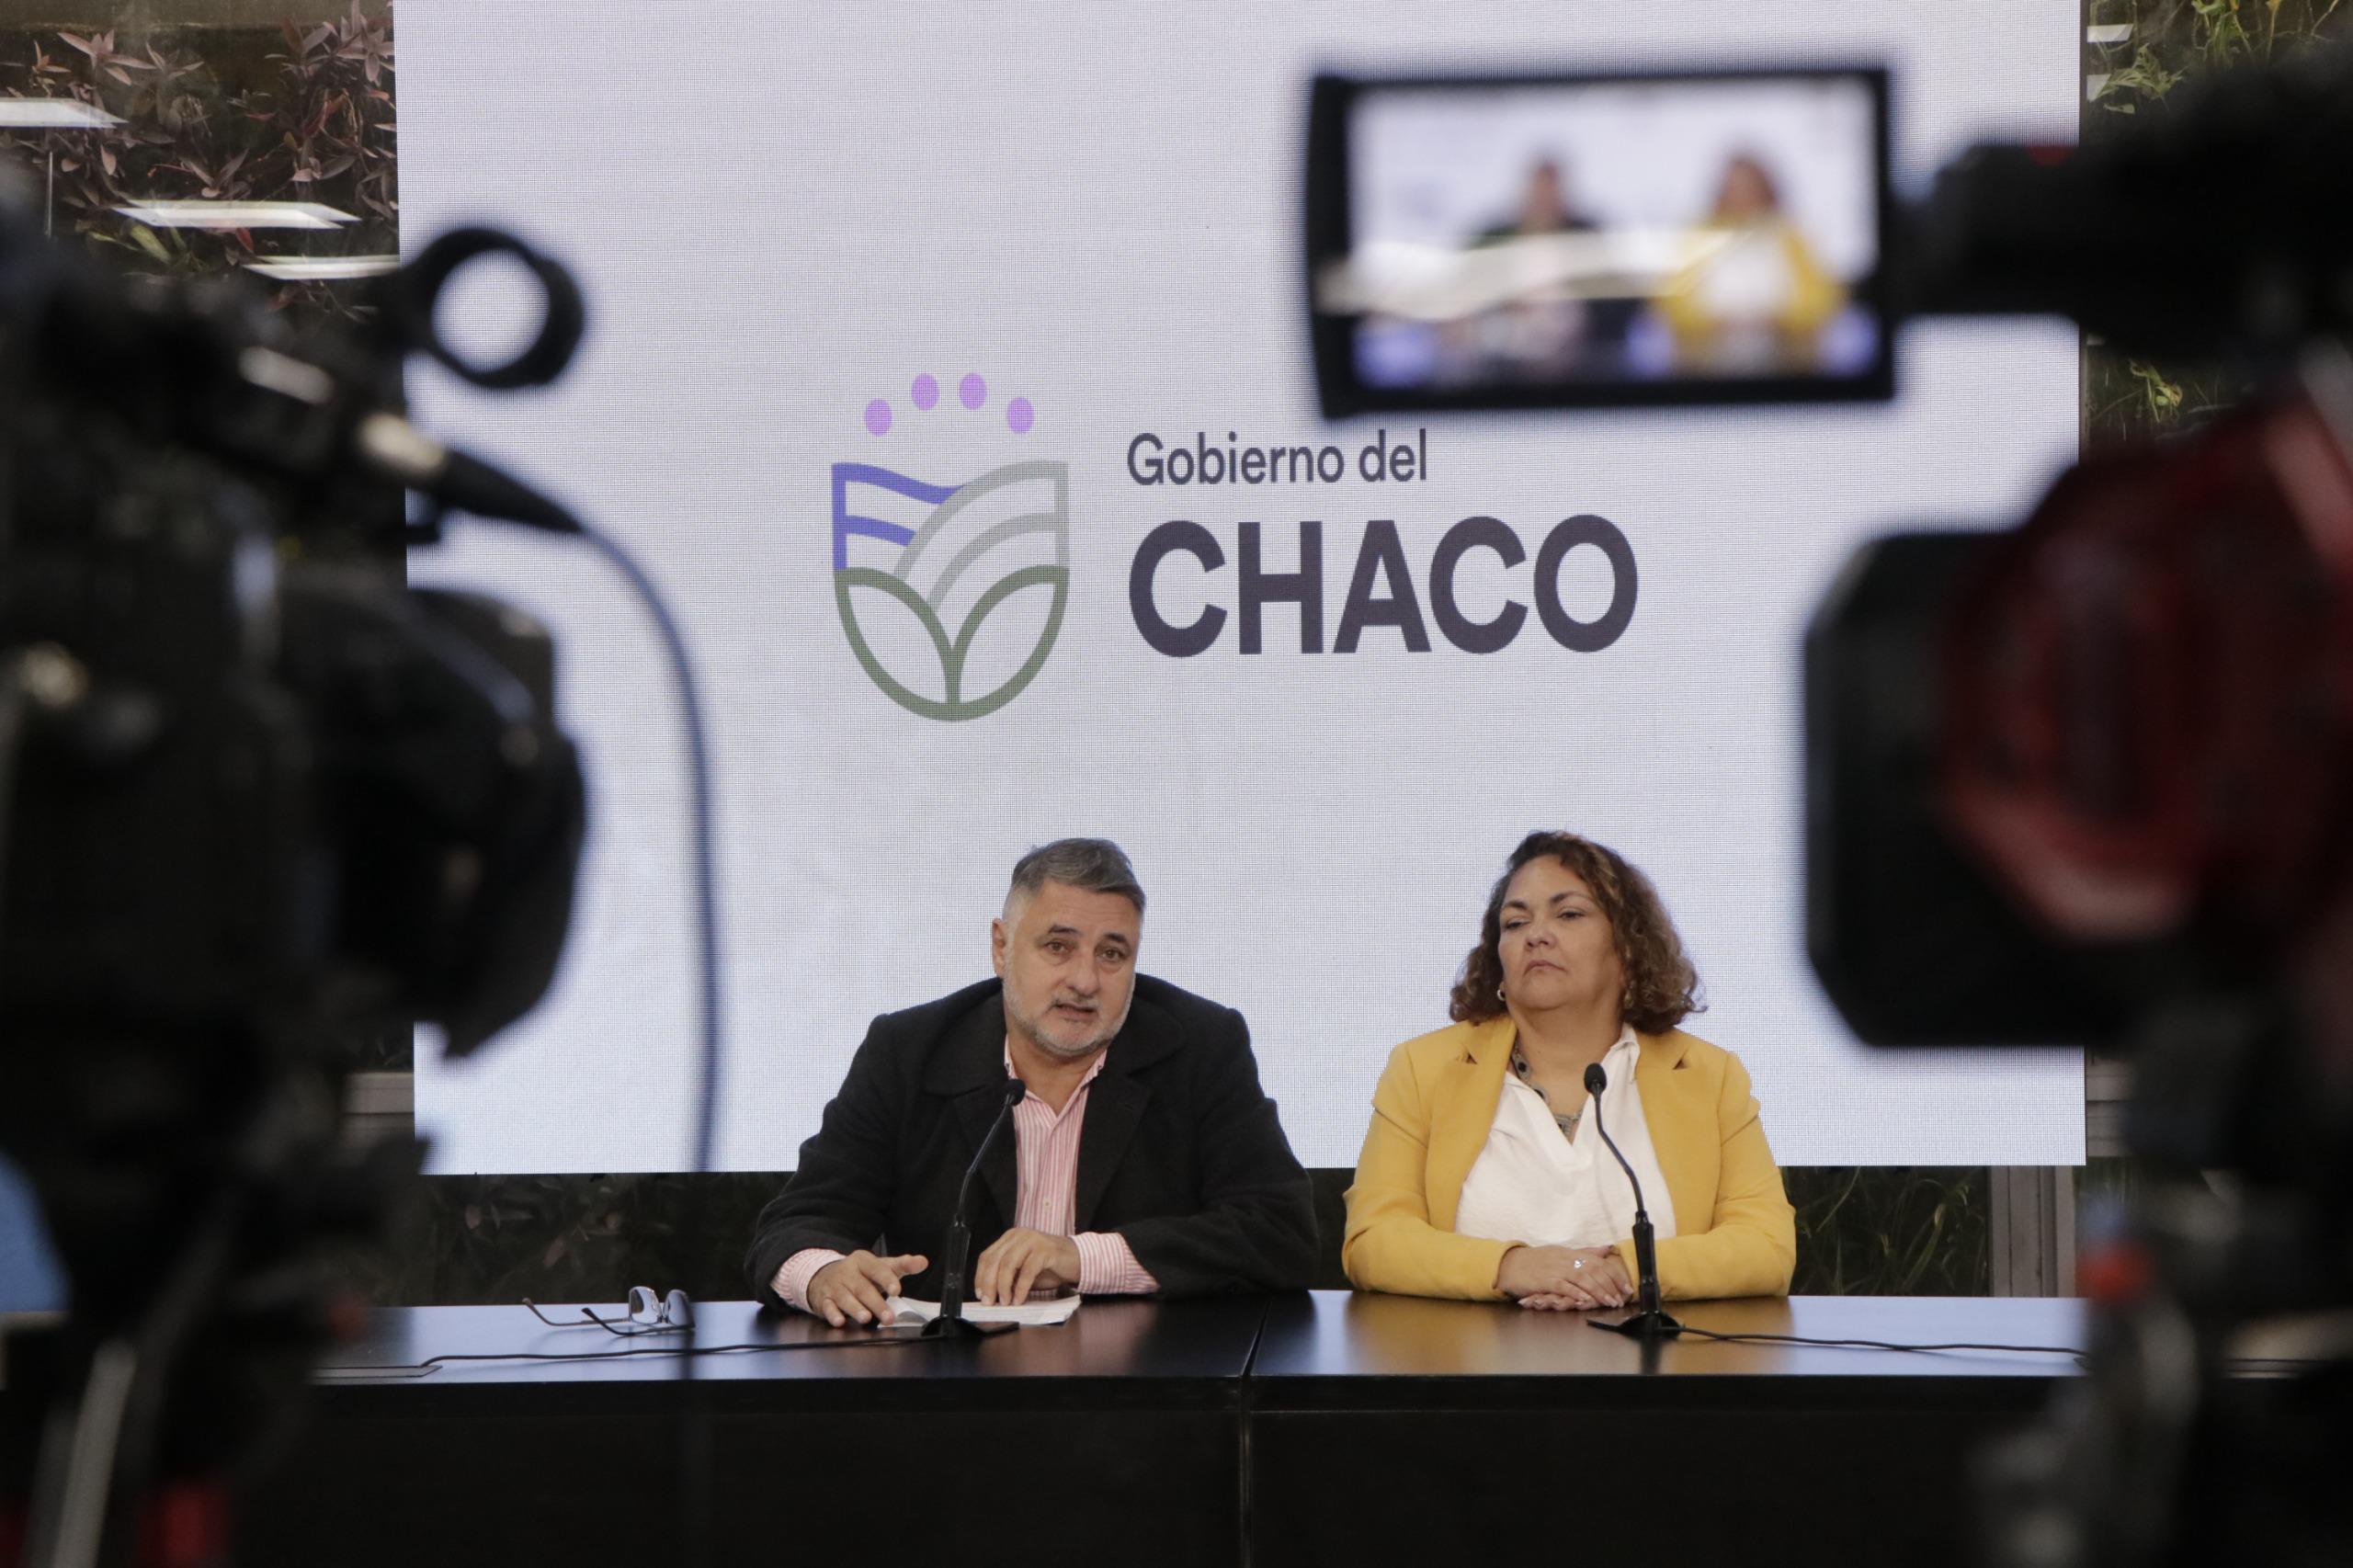 El Gobierno del Chaco Refuerza su Compromiso con Políticas de Género en Respuesta a los Casos de Femicidios